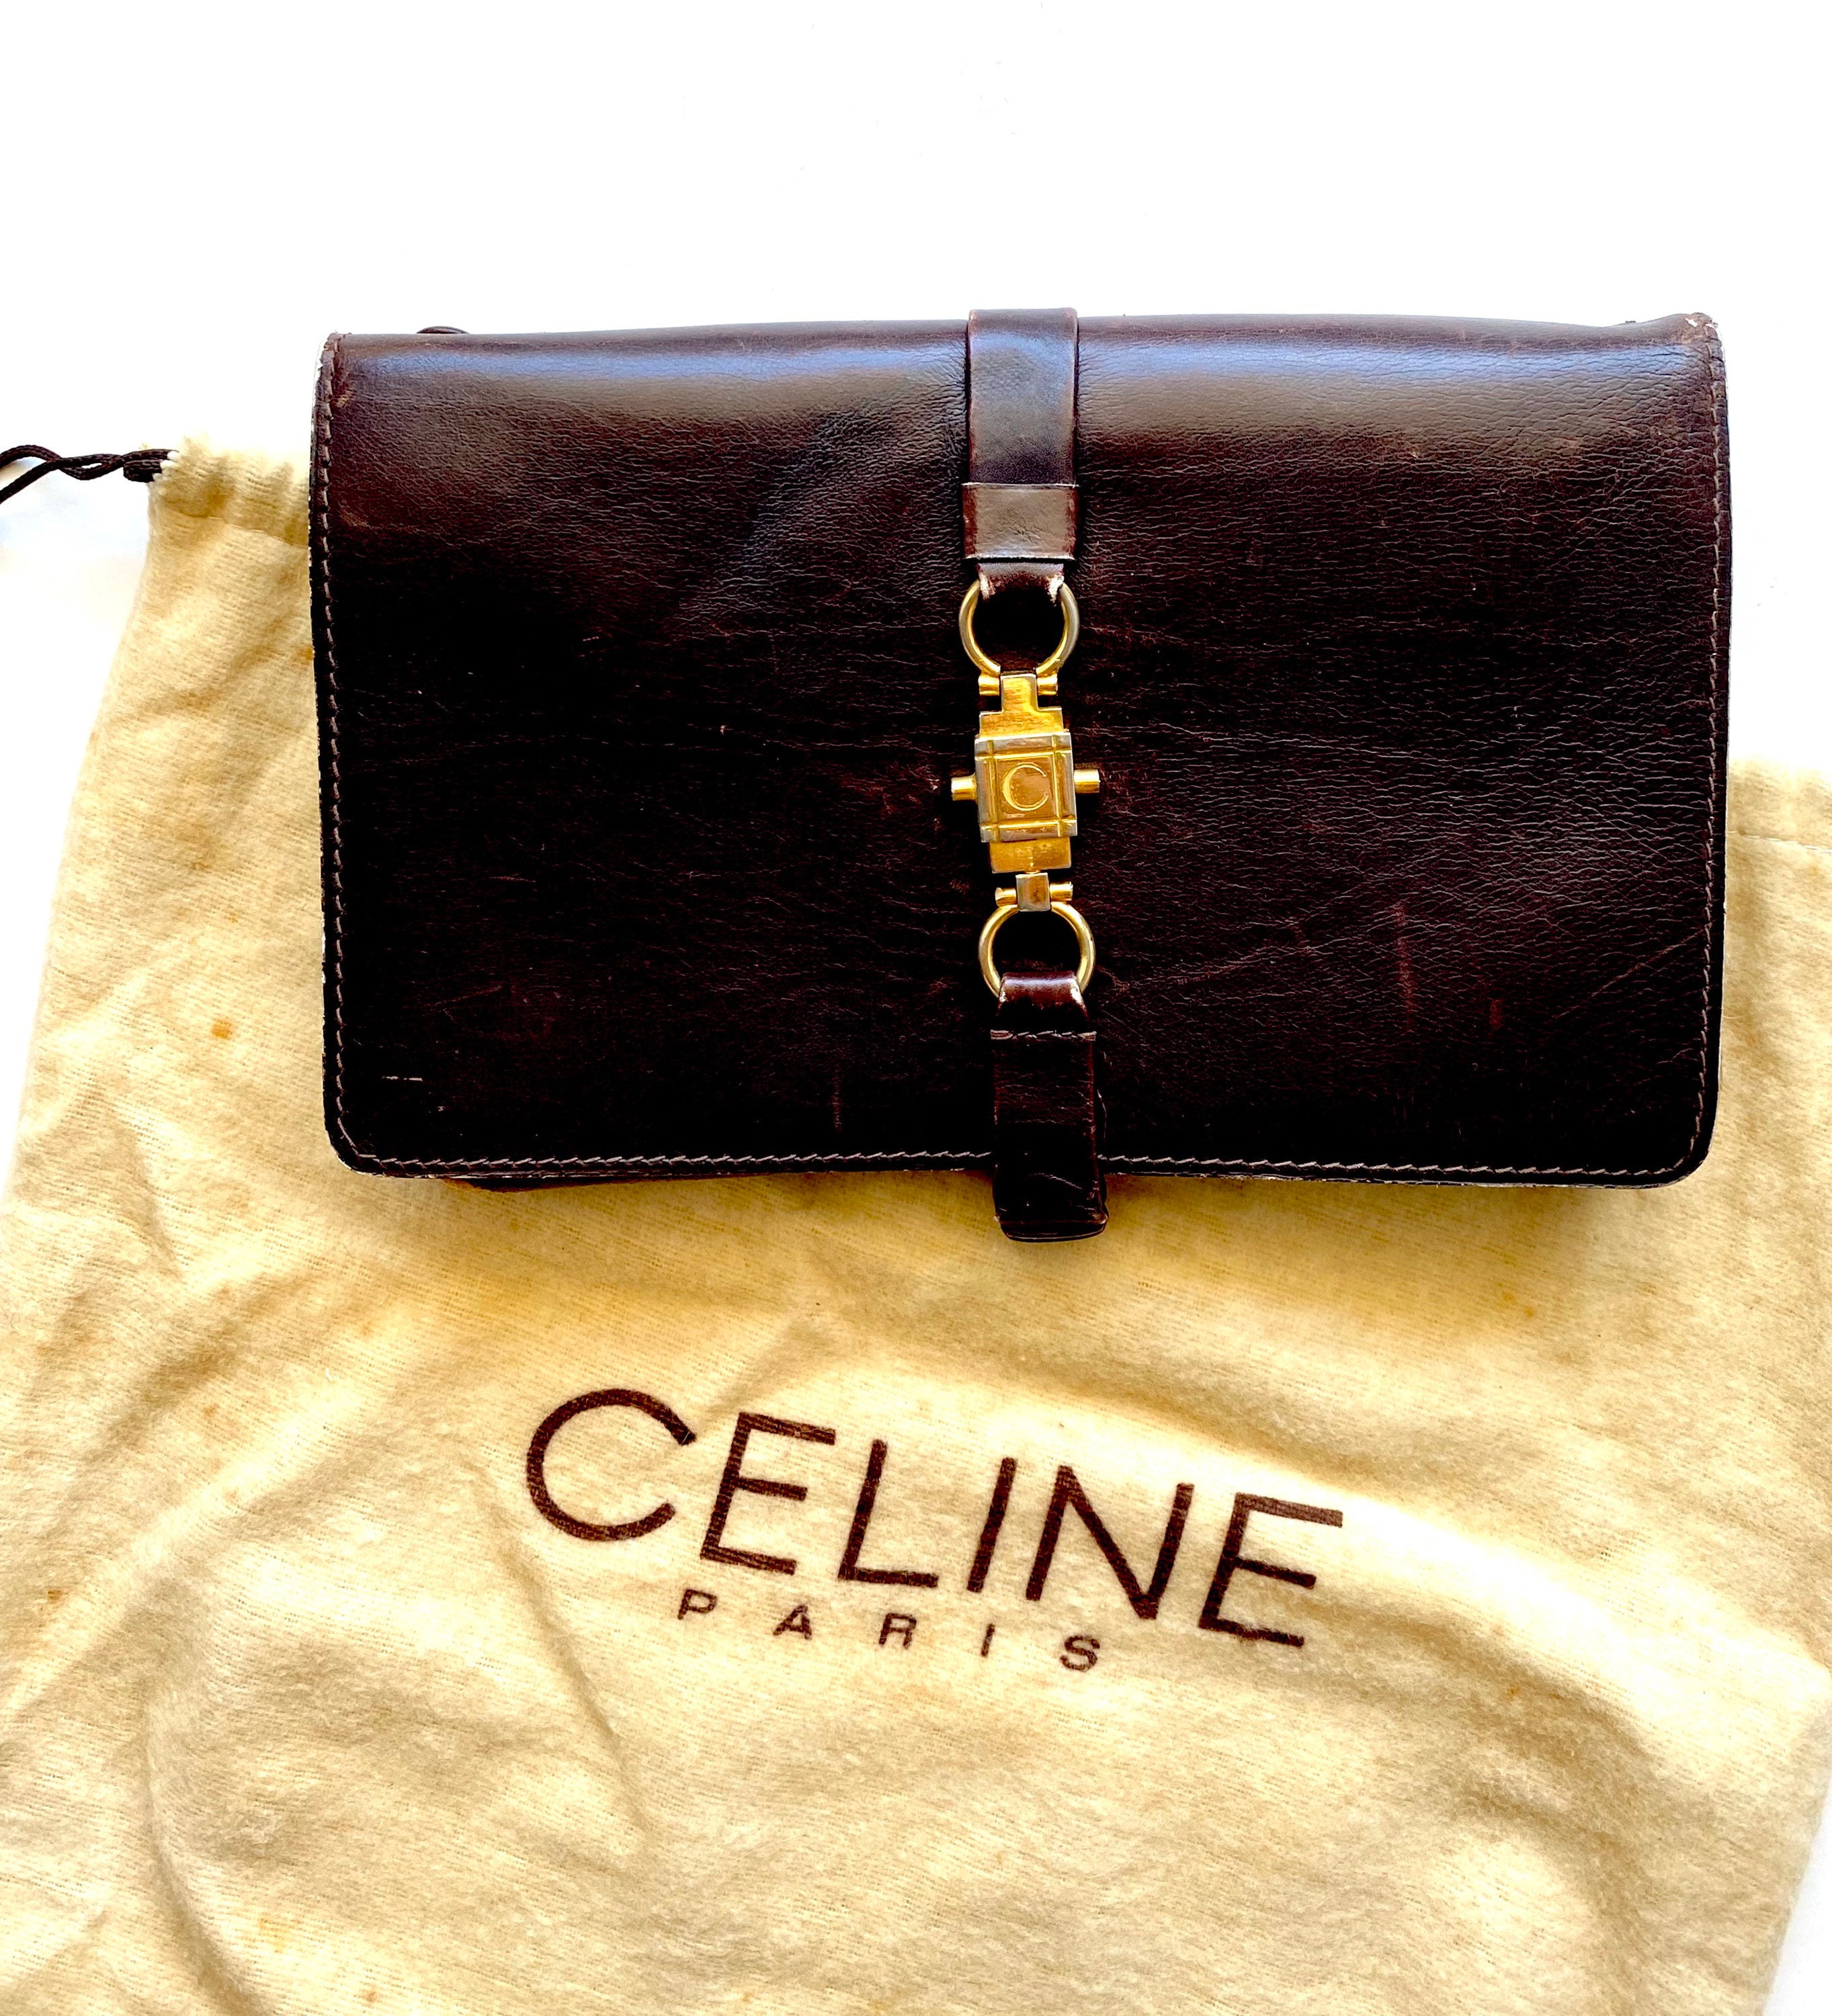 Vintage Céline Trio Calfskin Leather Clutch Handbag Brown 